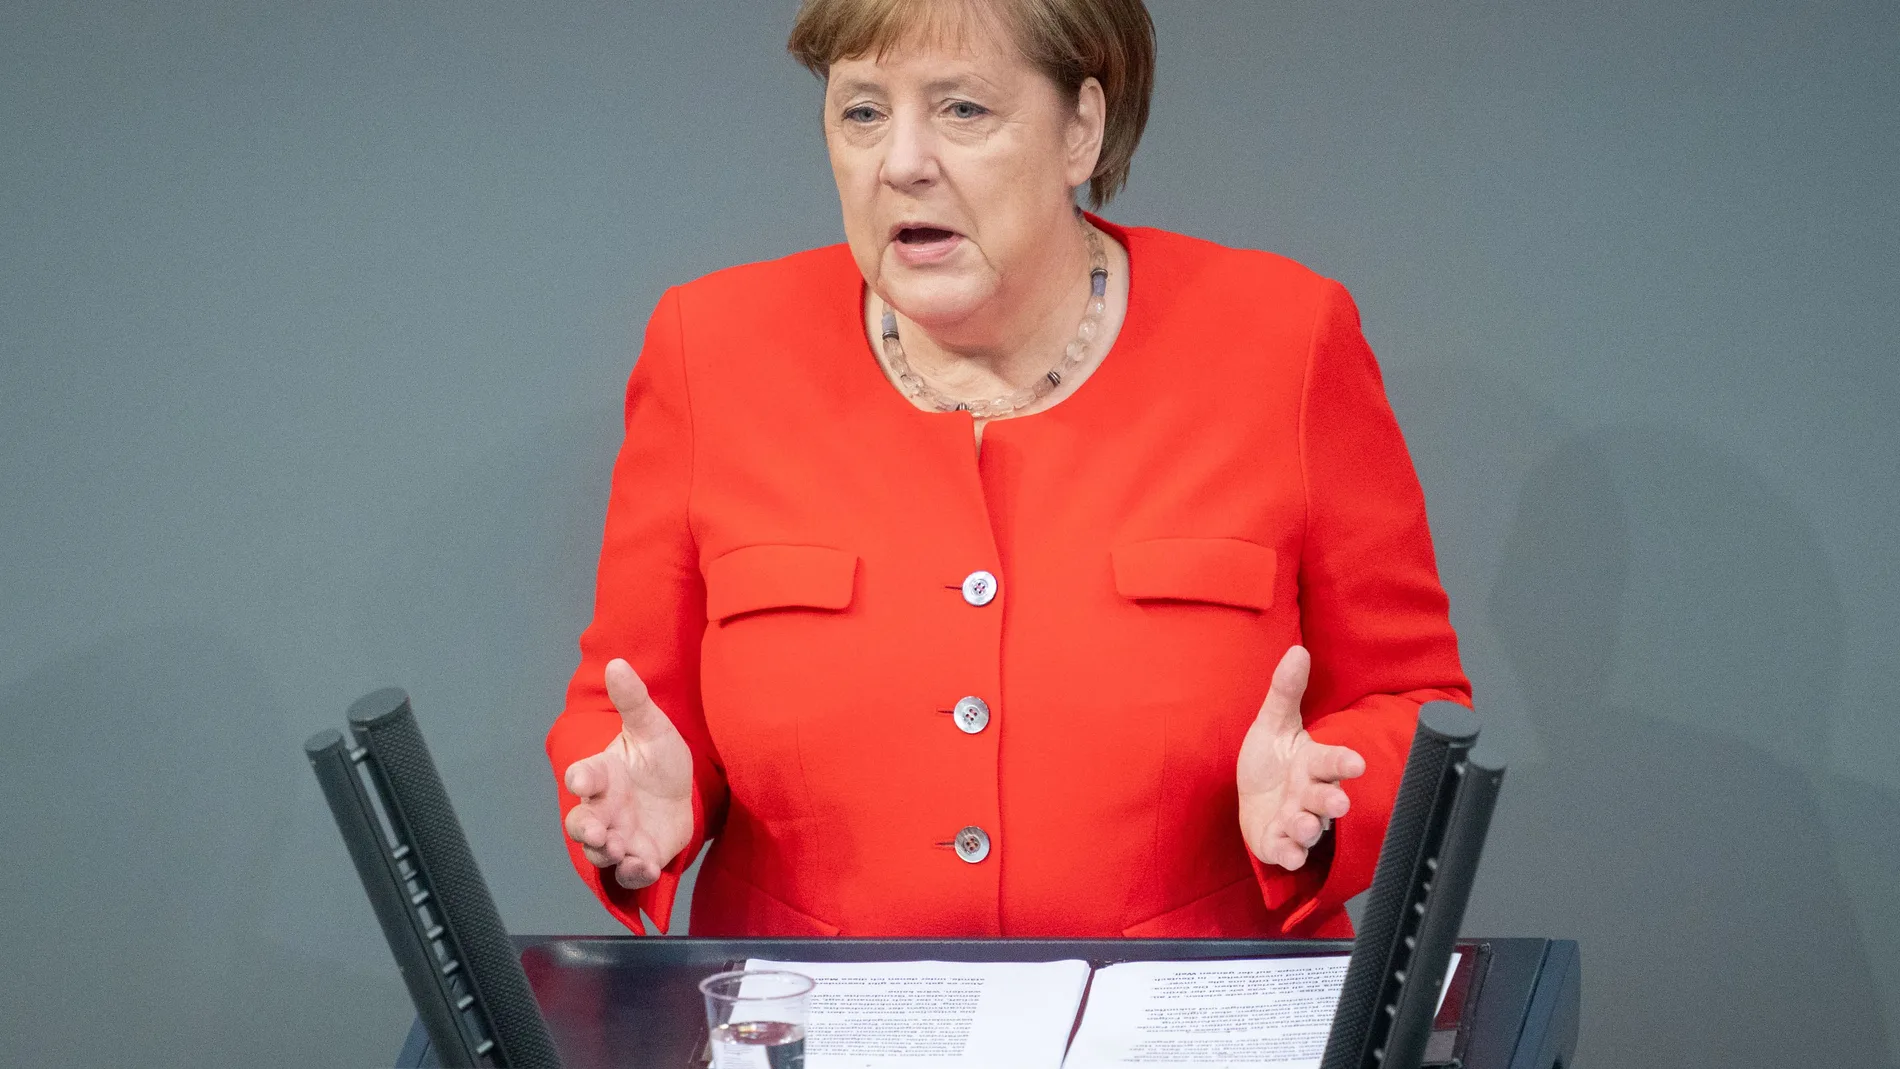 Alemania.- Merkel critica duramente los disturbios registrados durante el fin de semana en la ciudad de Stuttgart